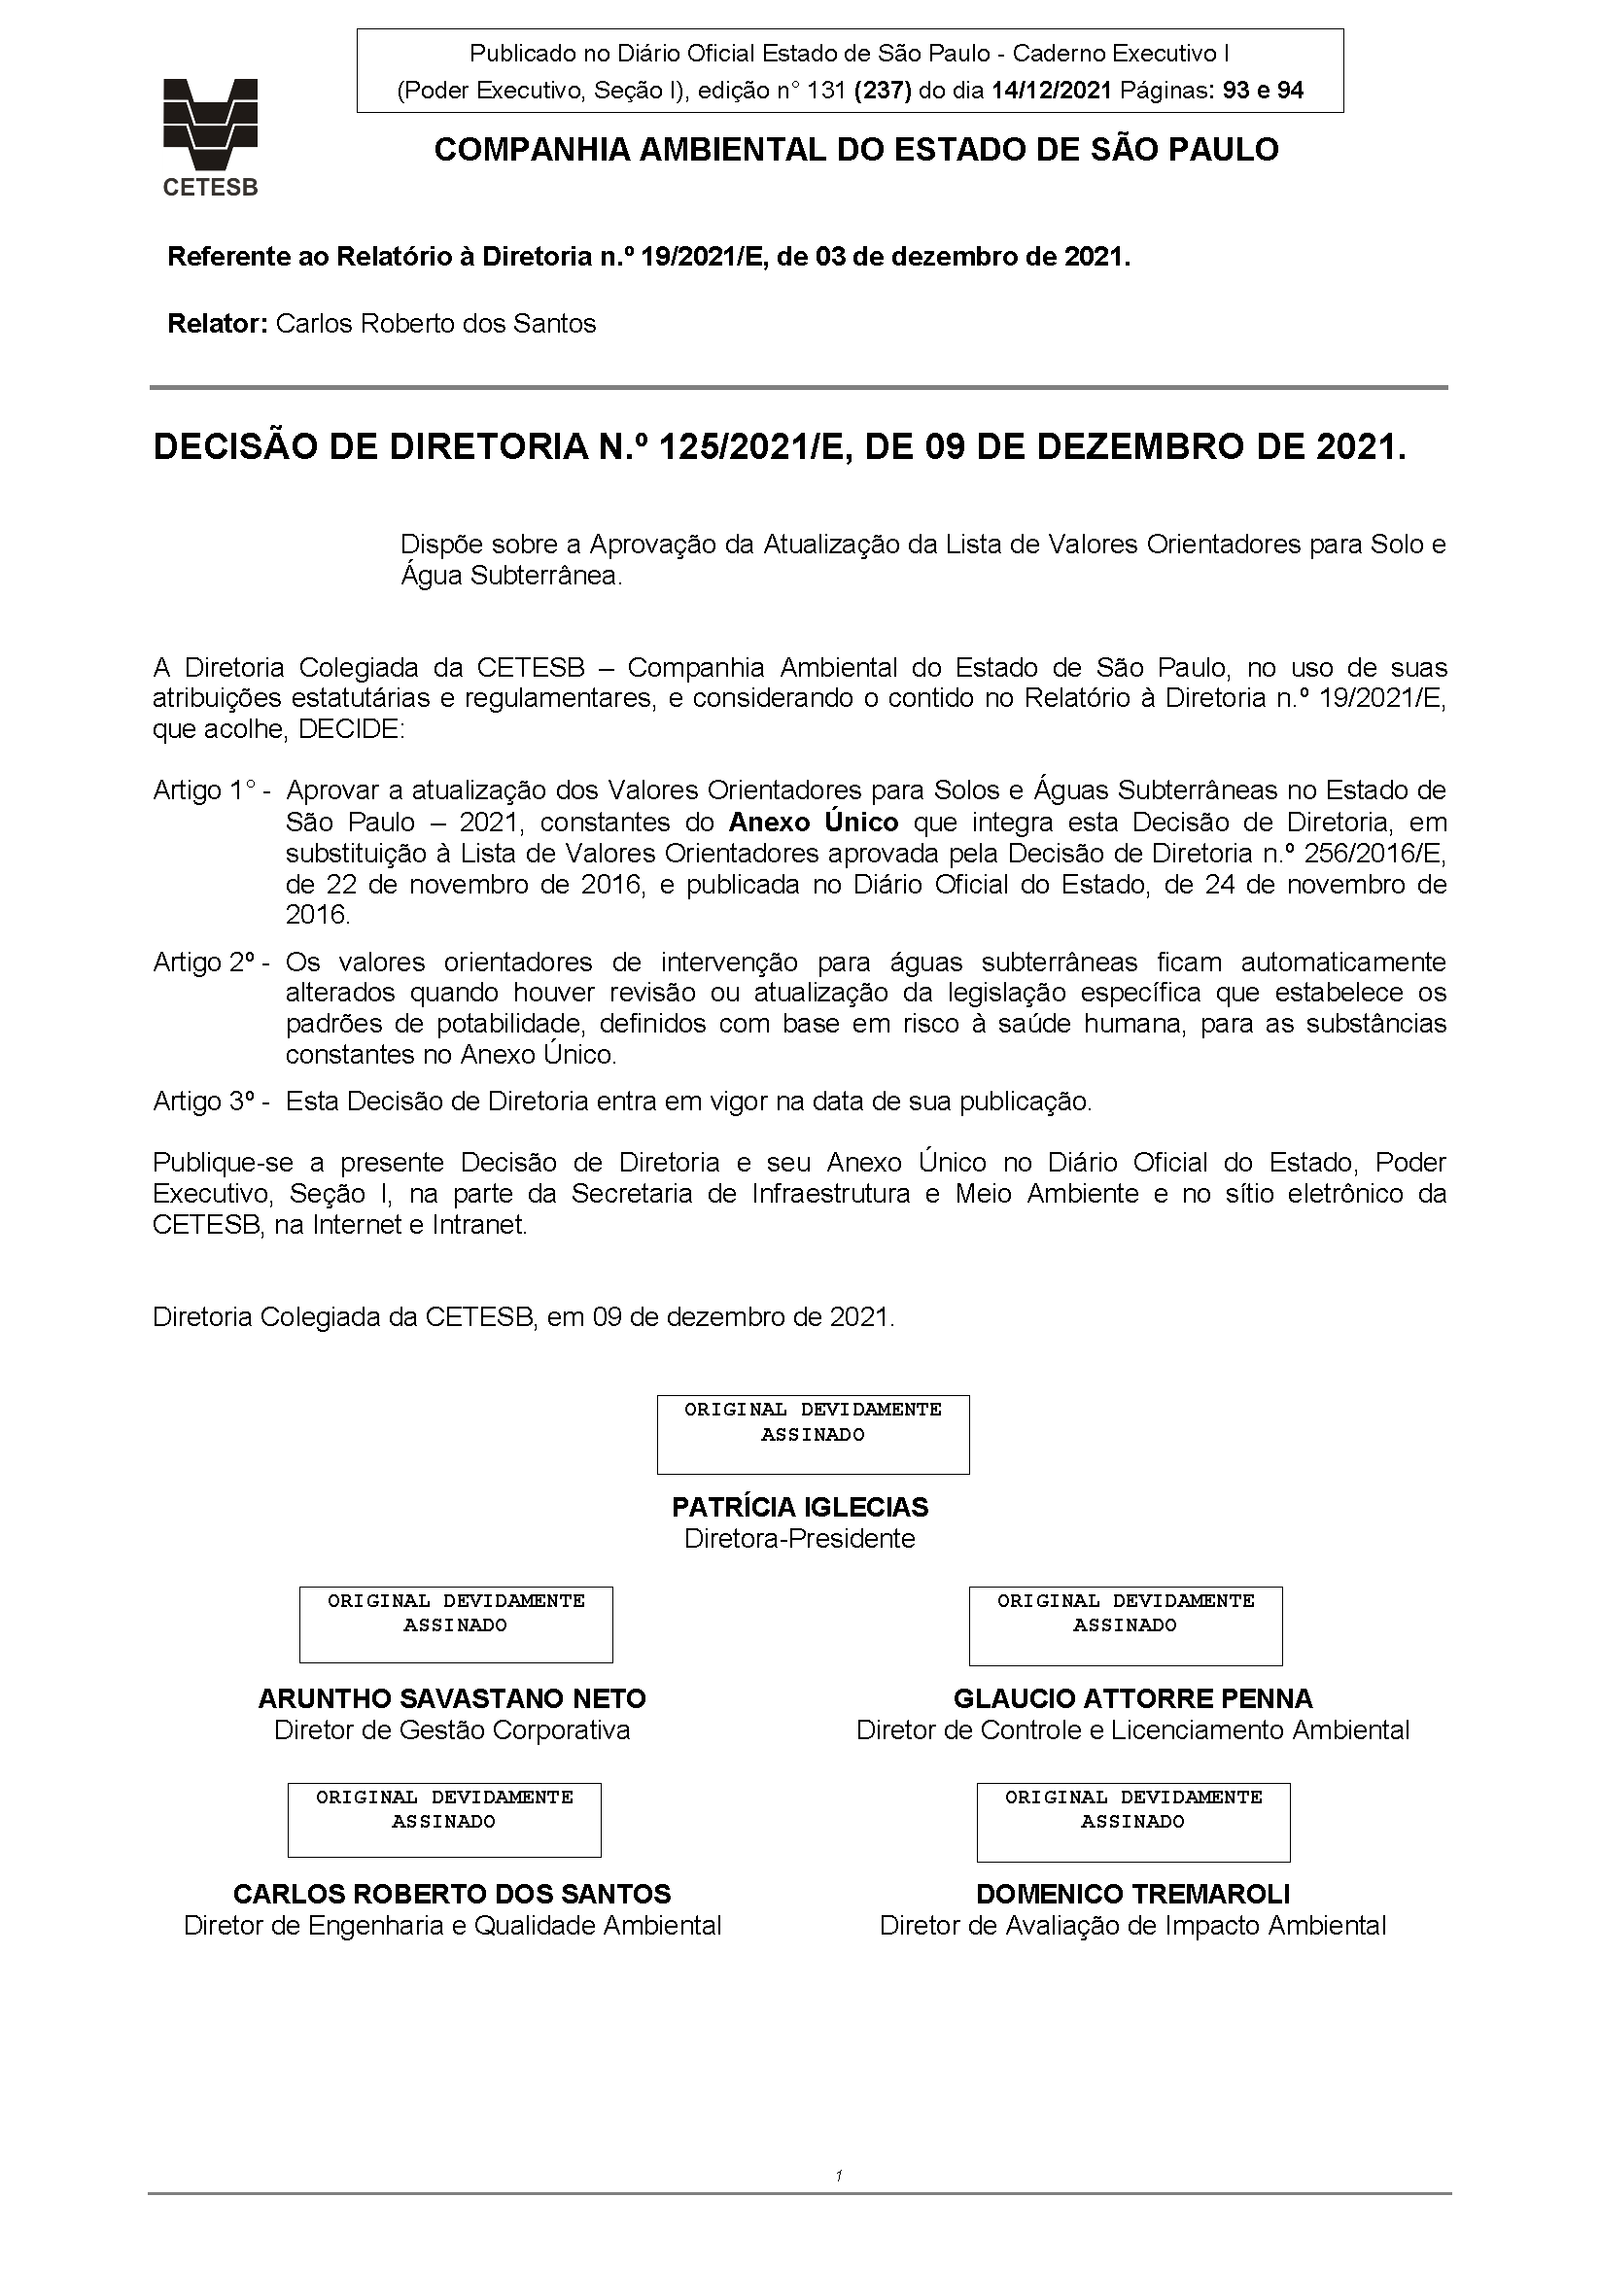 DECISÃO DE DIRETORIA N.º 125/2021/E, DE 09 DE DEZEMBRO DE 2021